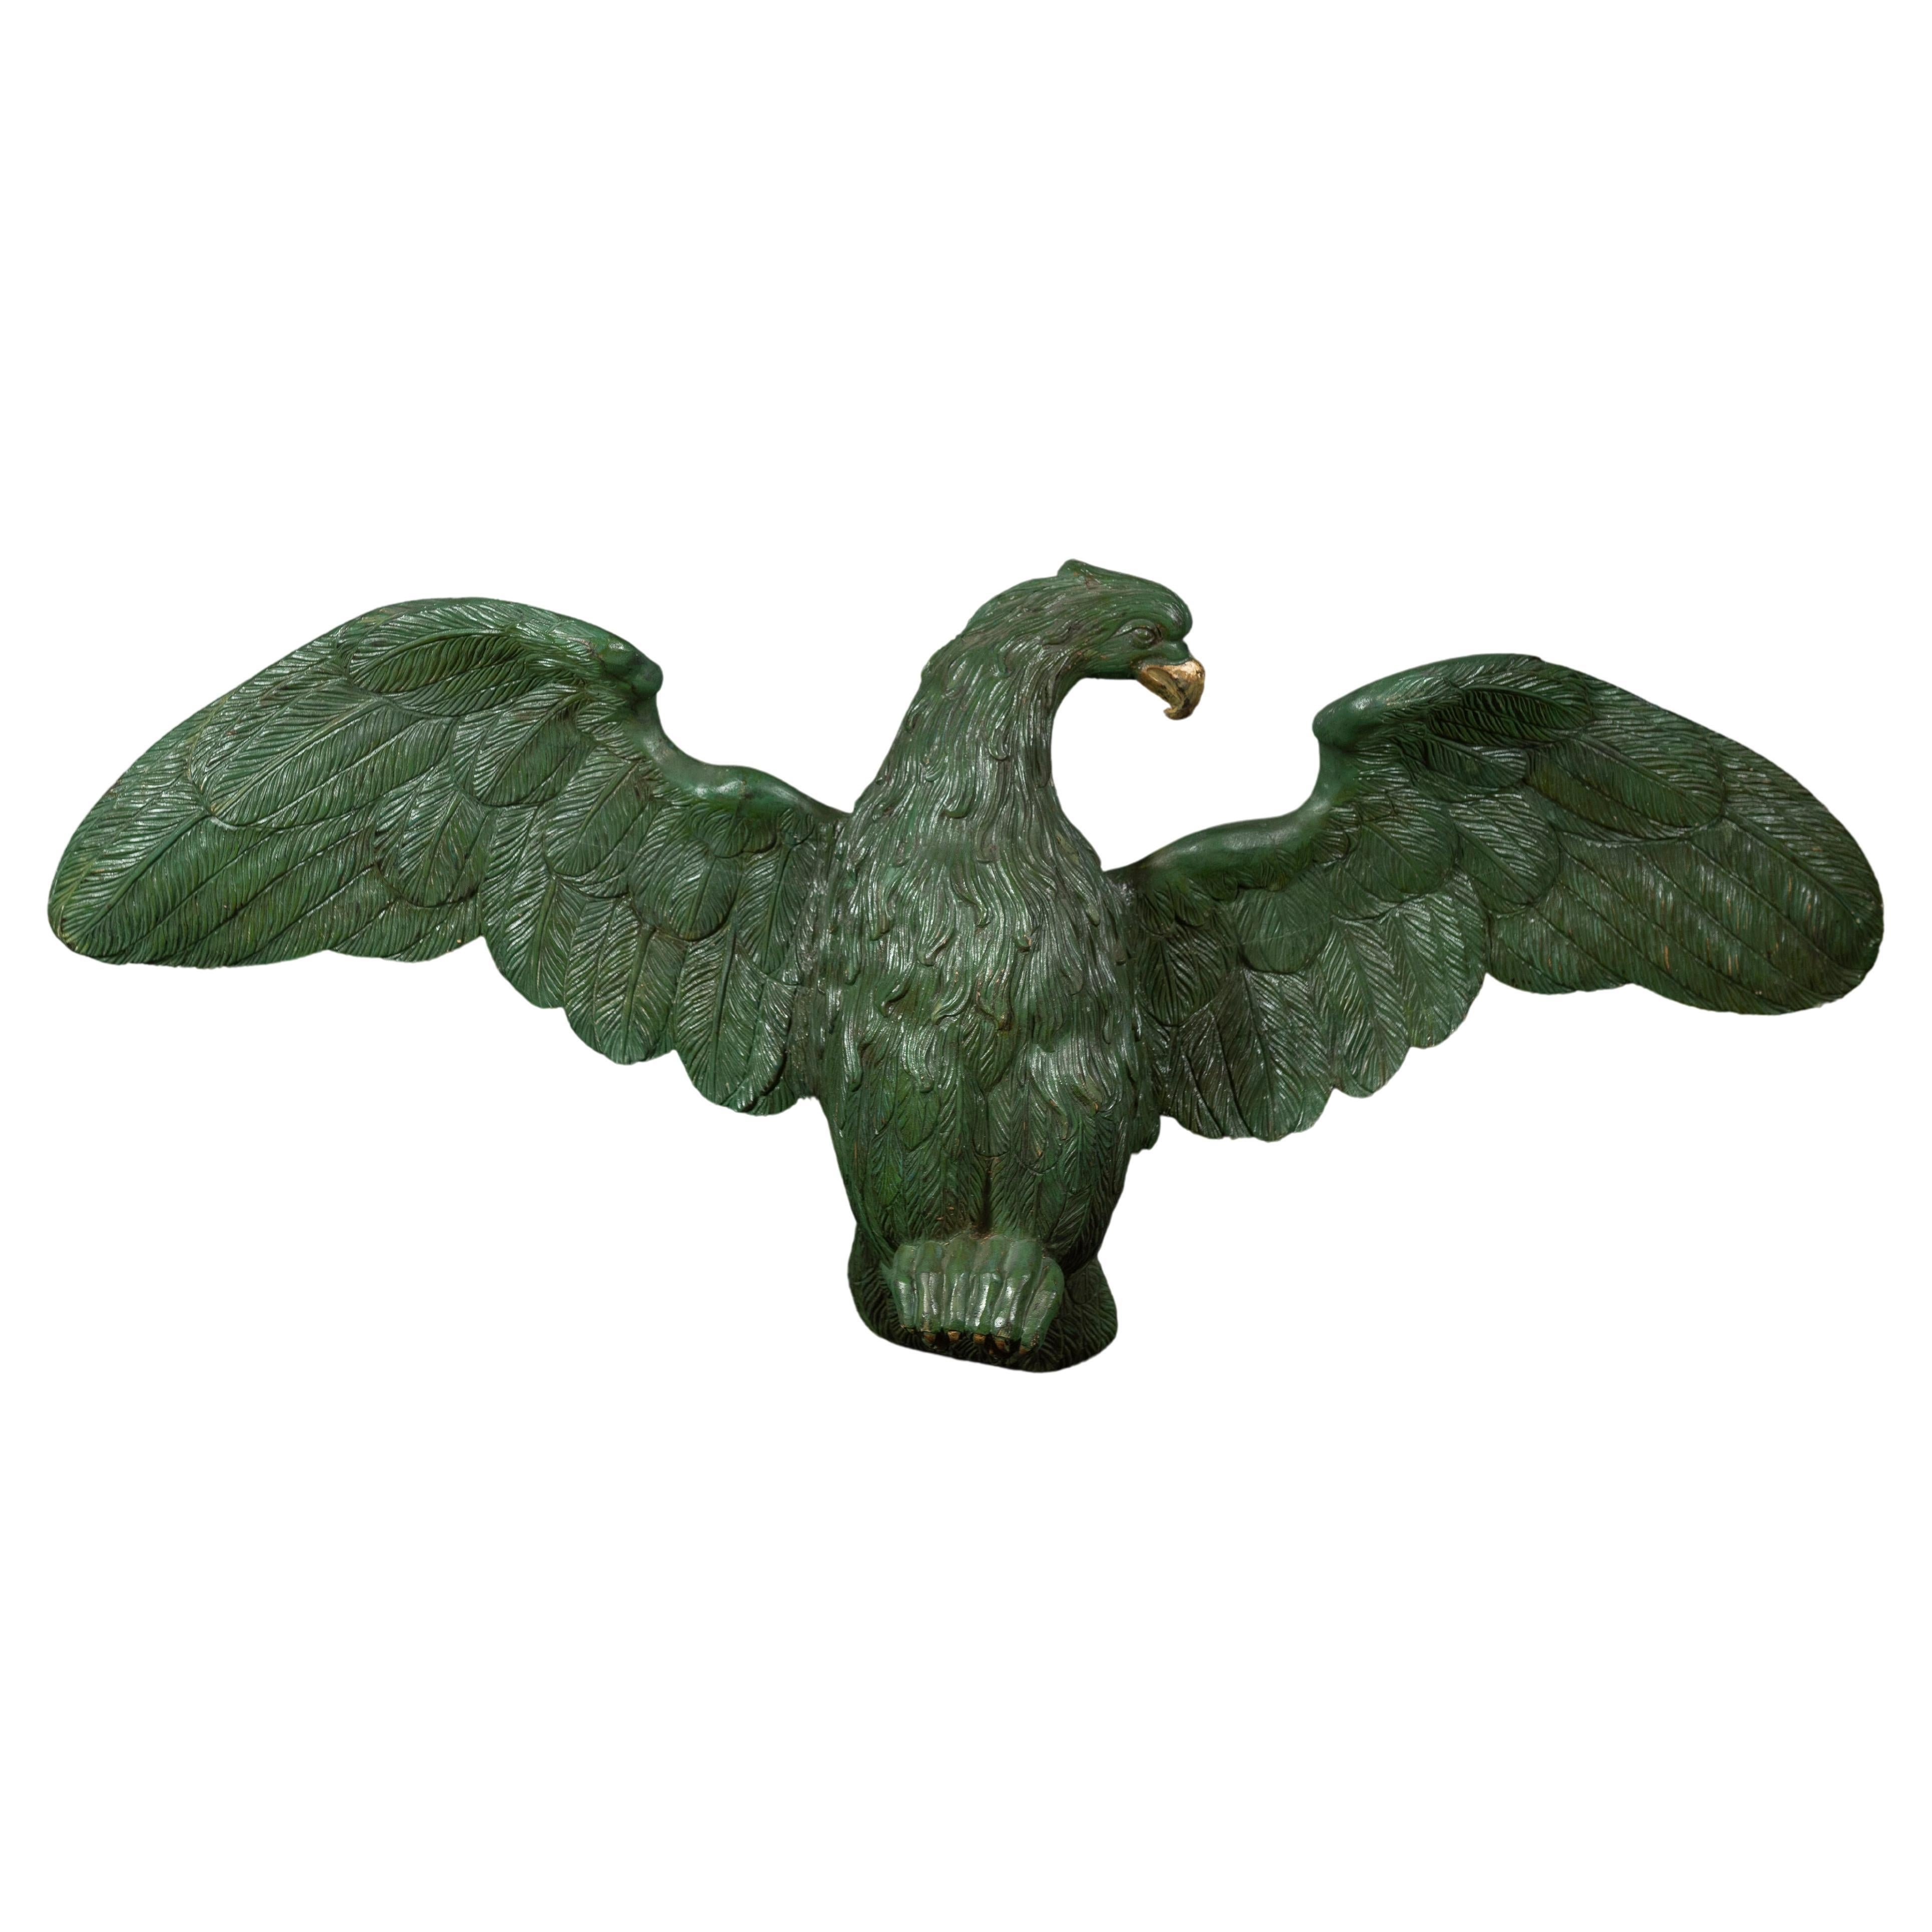 Grand aigle sculpté ancien en bois vert peint avec des touches d'or